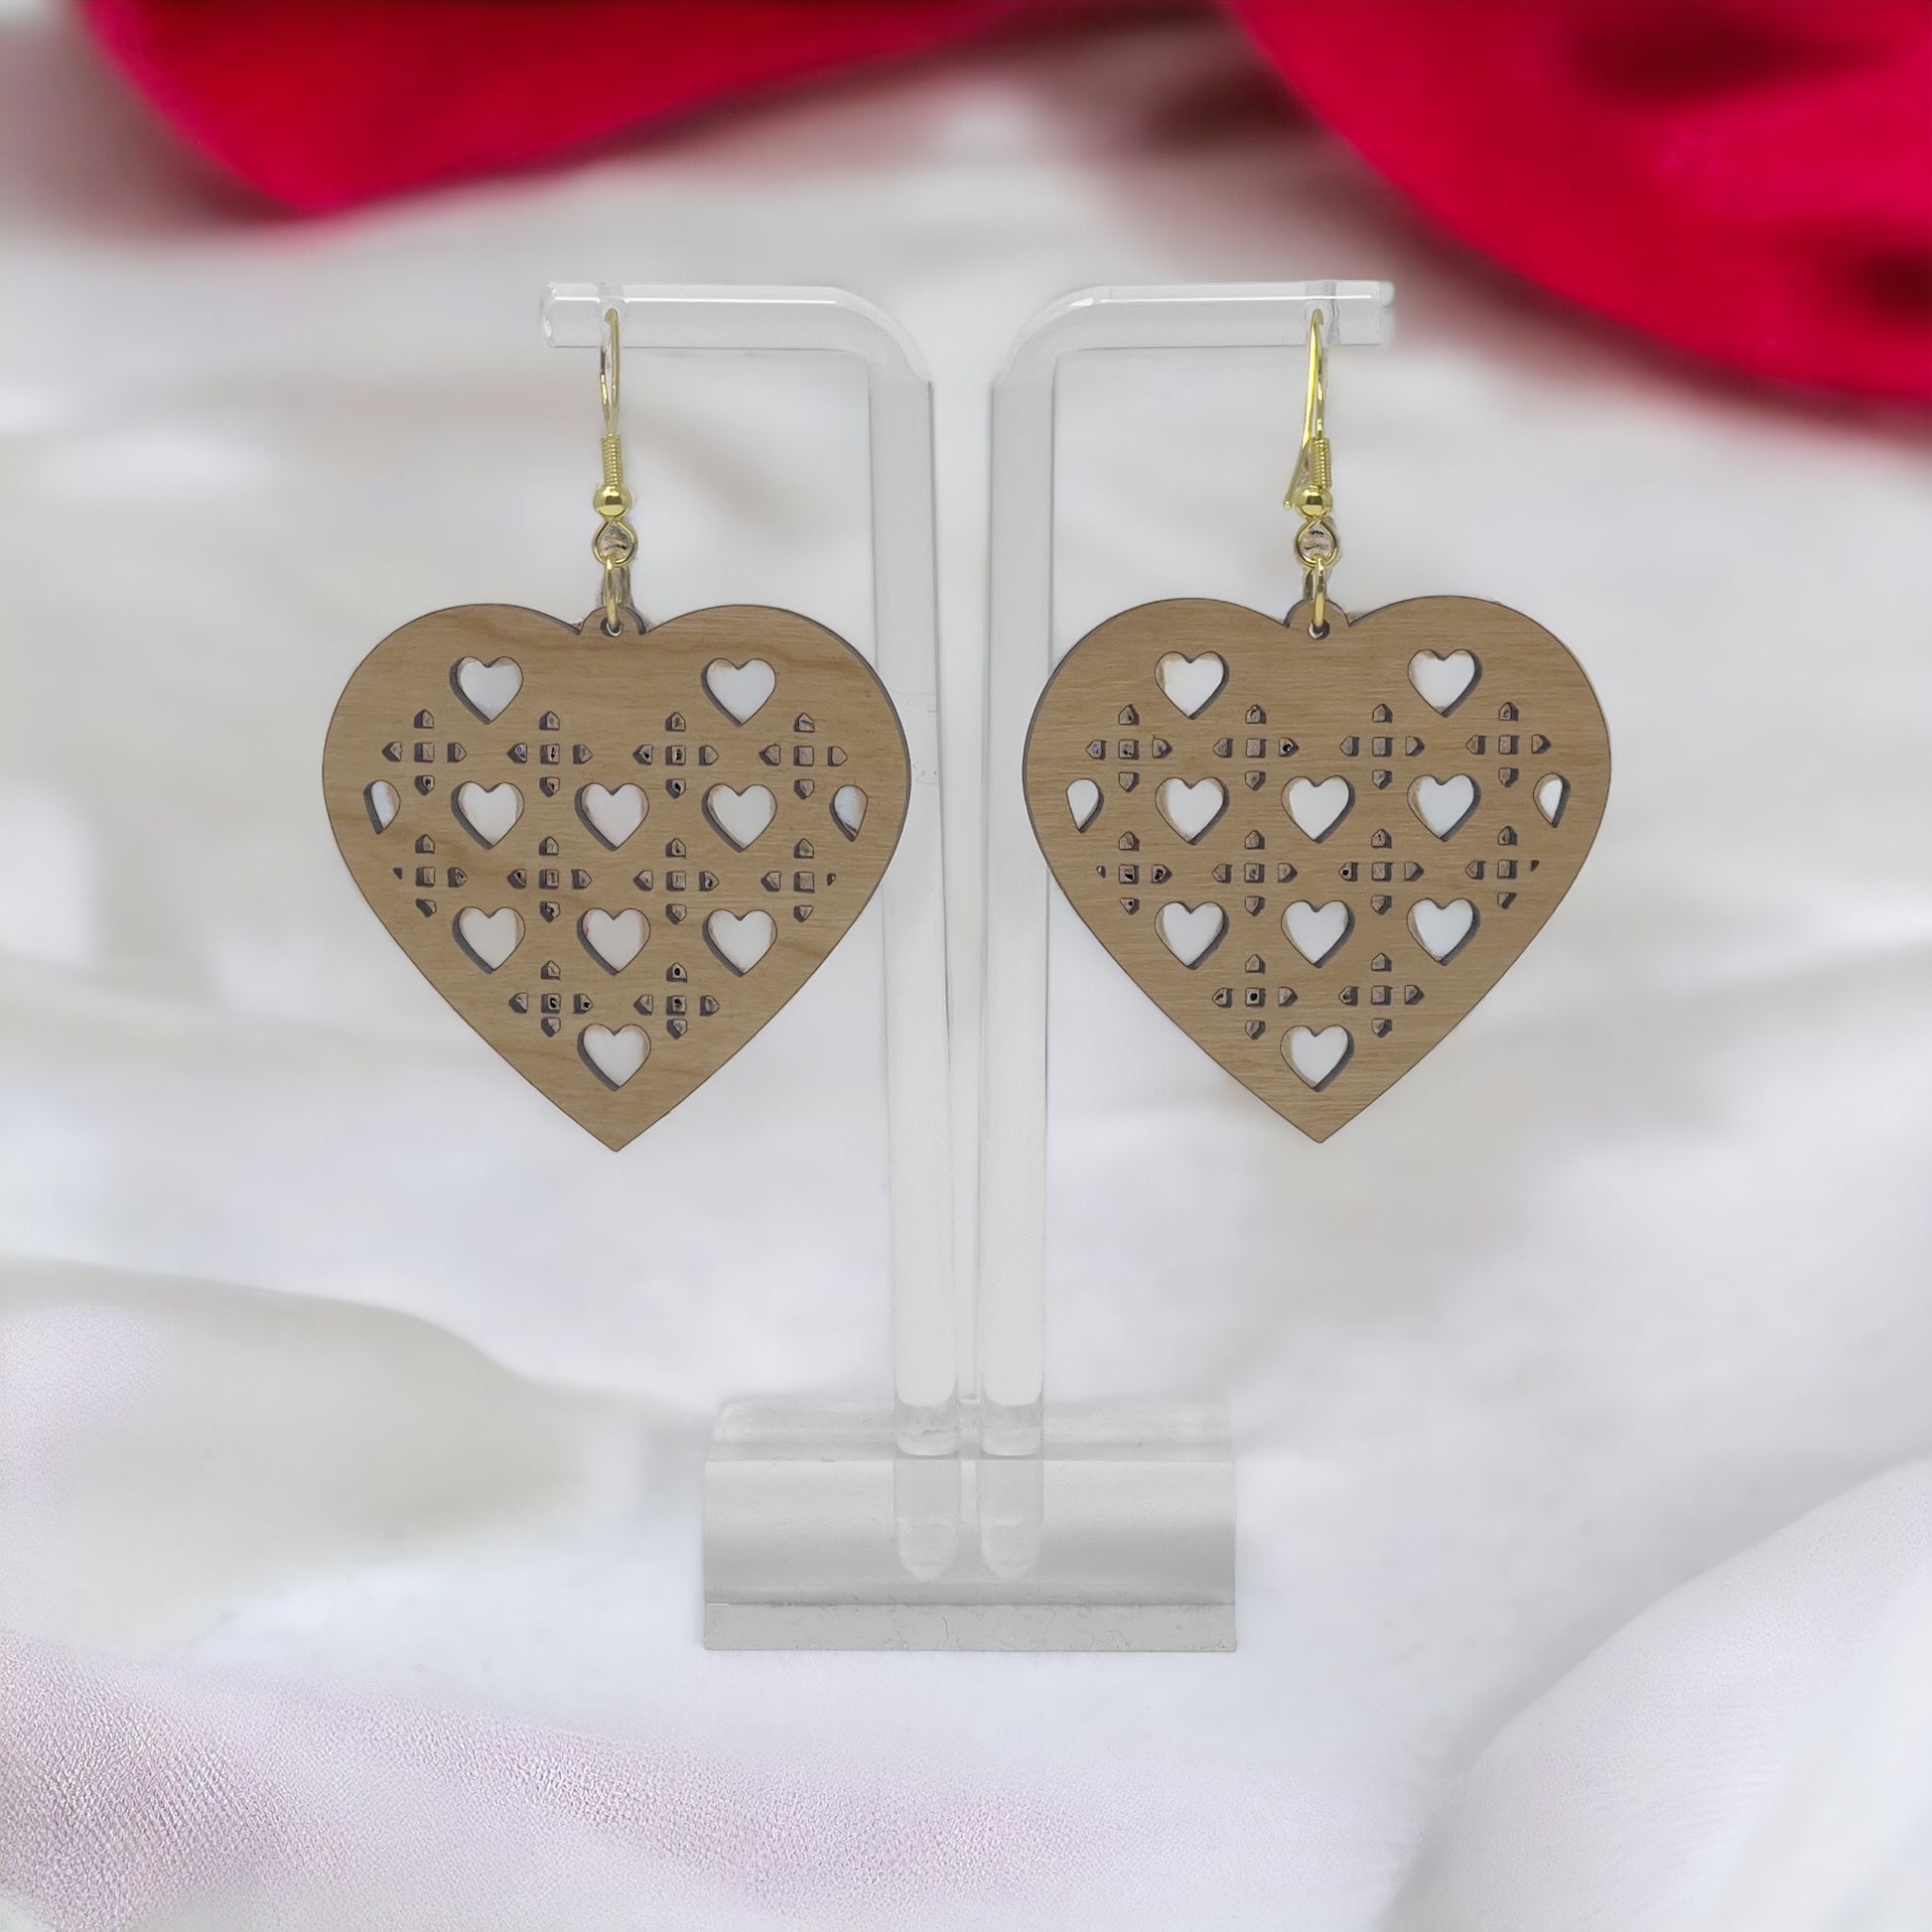 Wood Heart Earrings, Rustic Valentines Dangle Earrings, Cute Holiday Earrings, Wooden Lattice Cutout Earrings, Country Western Boho Jewelry